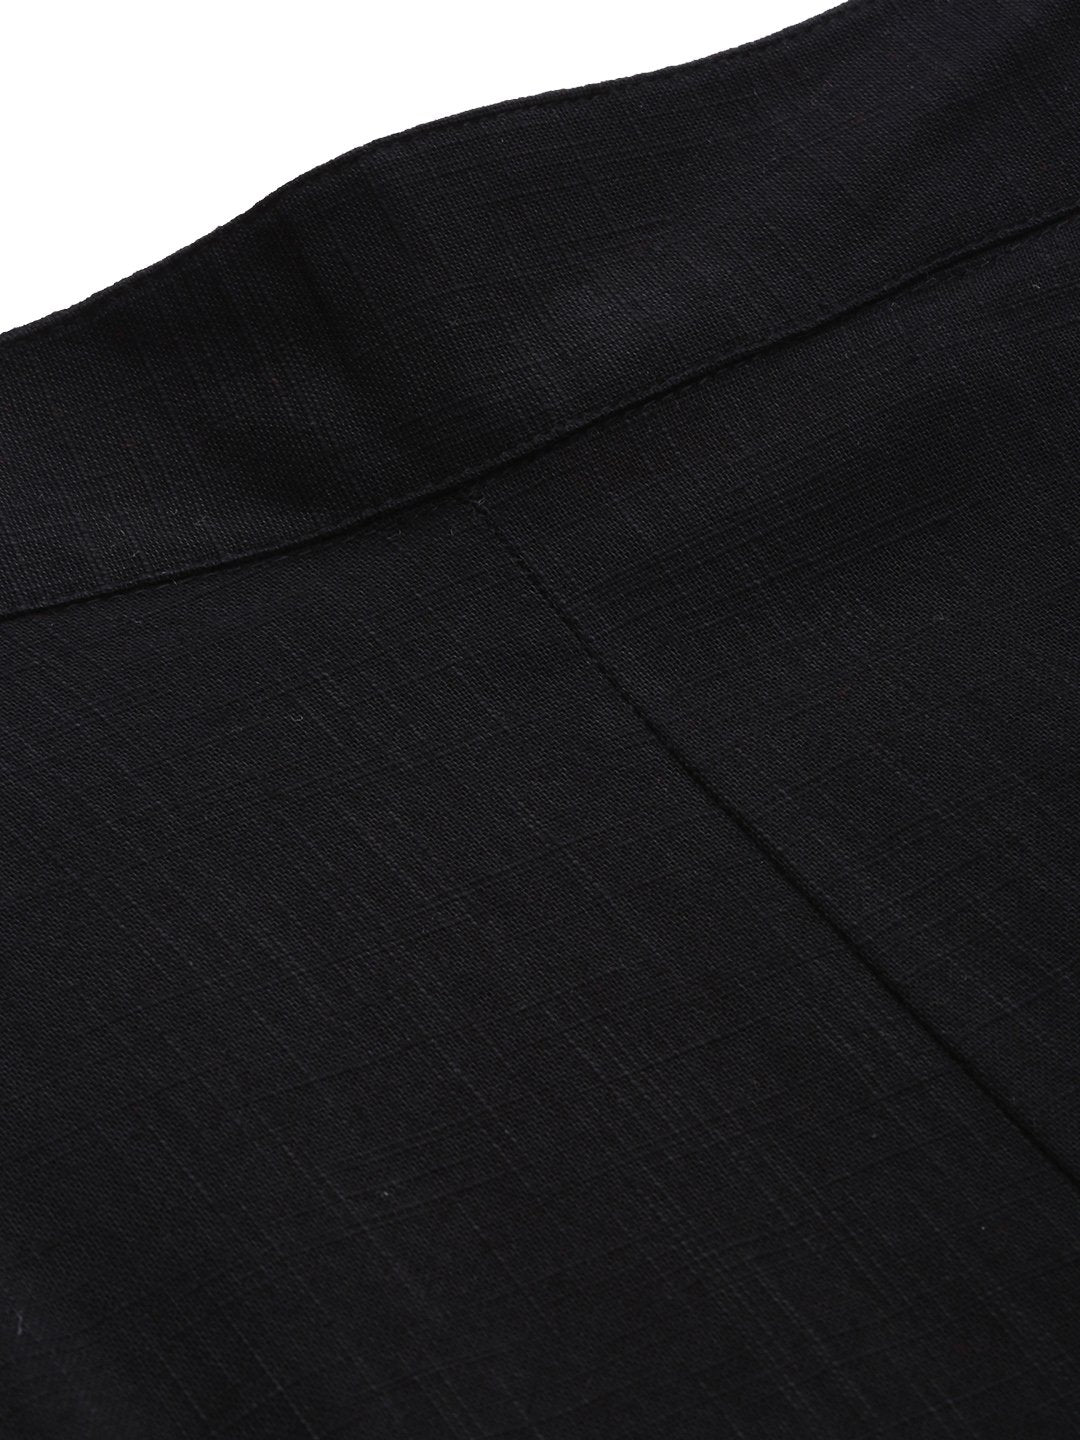 Women's Black Cotton Trouser - Divena